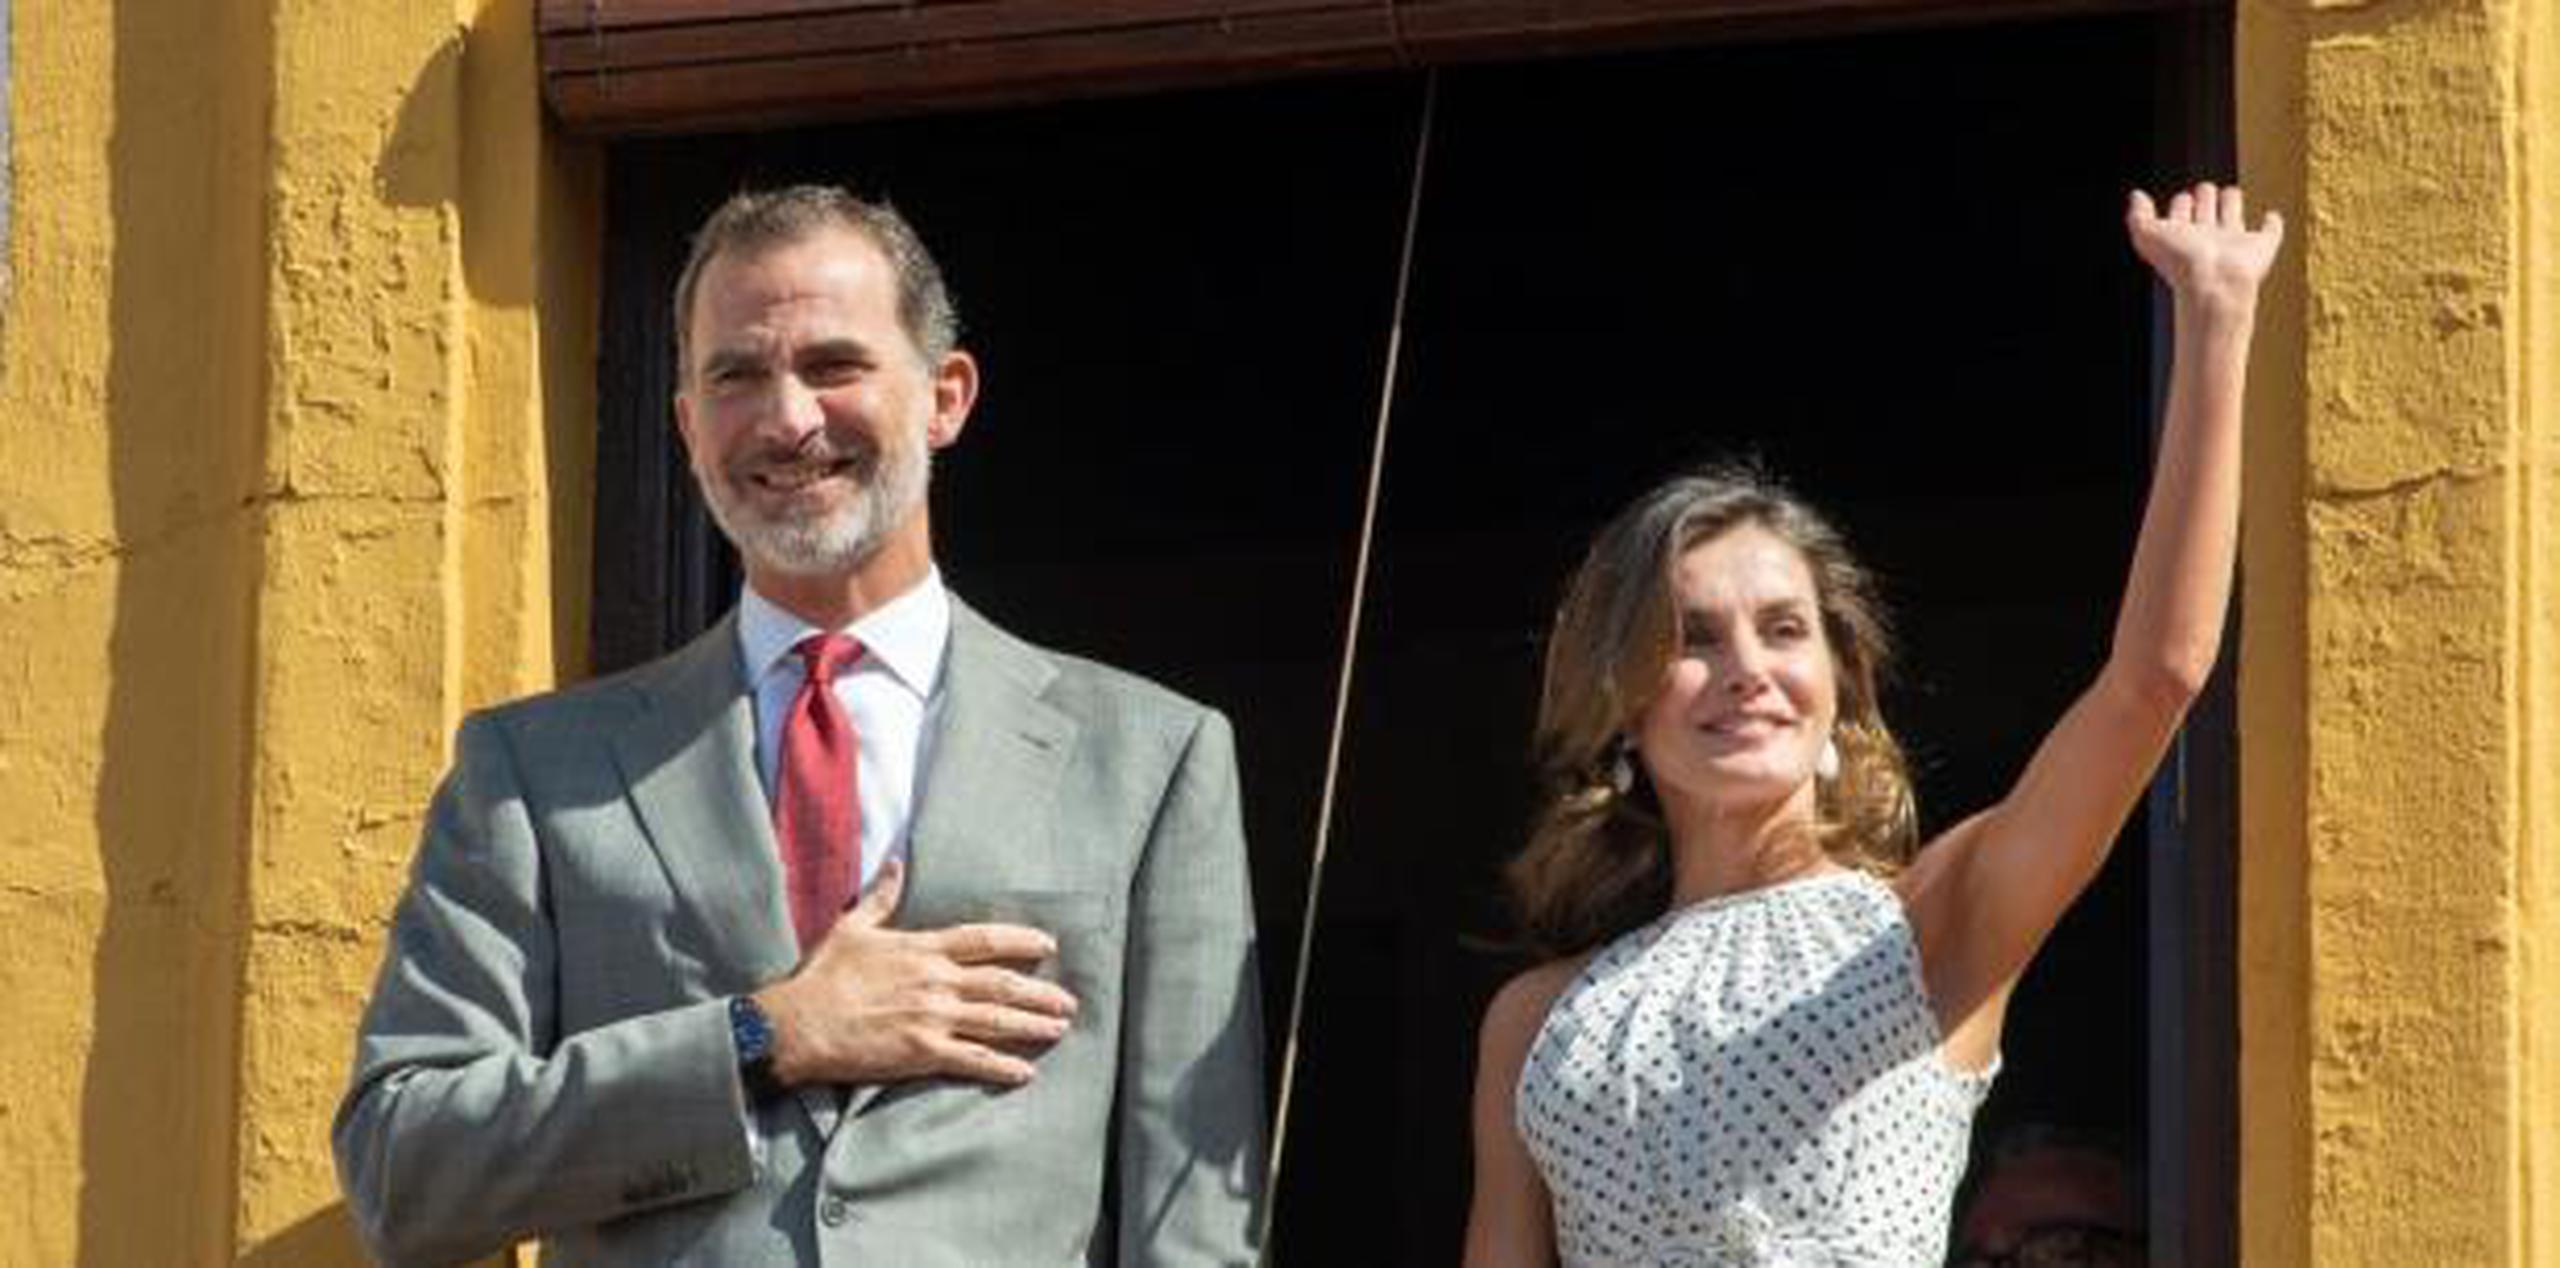 Los reyes de España fueron invitados a Cuba hace dos años, pero hasta ahora no se había puesto una fecha para el viaje. (EFE)